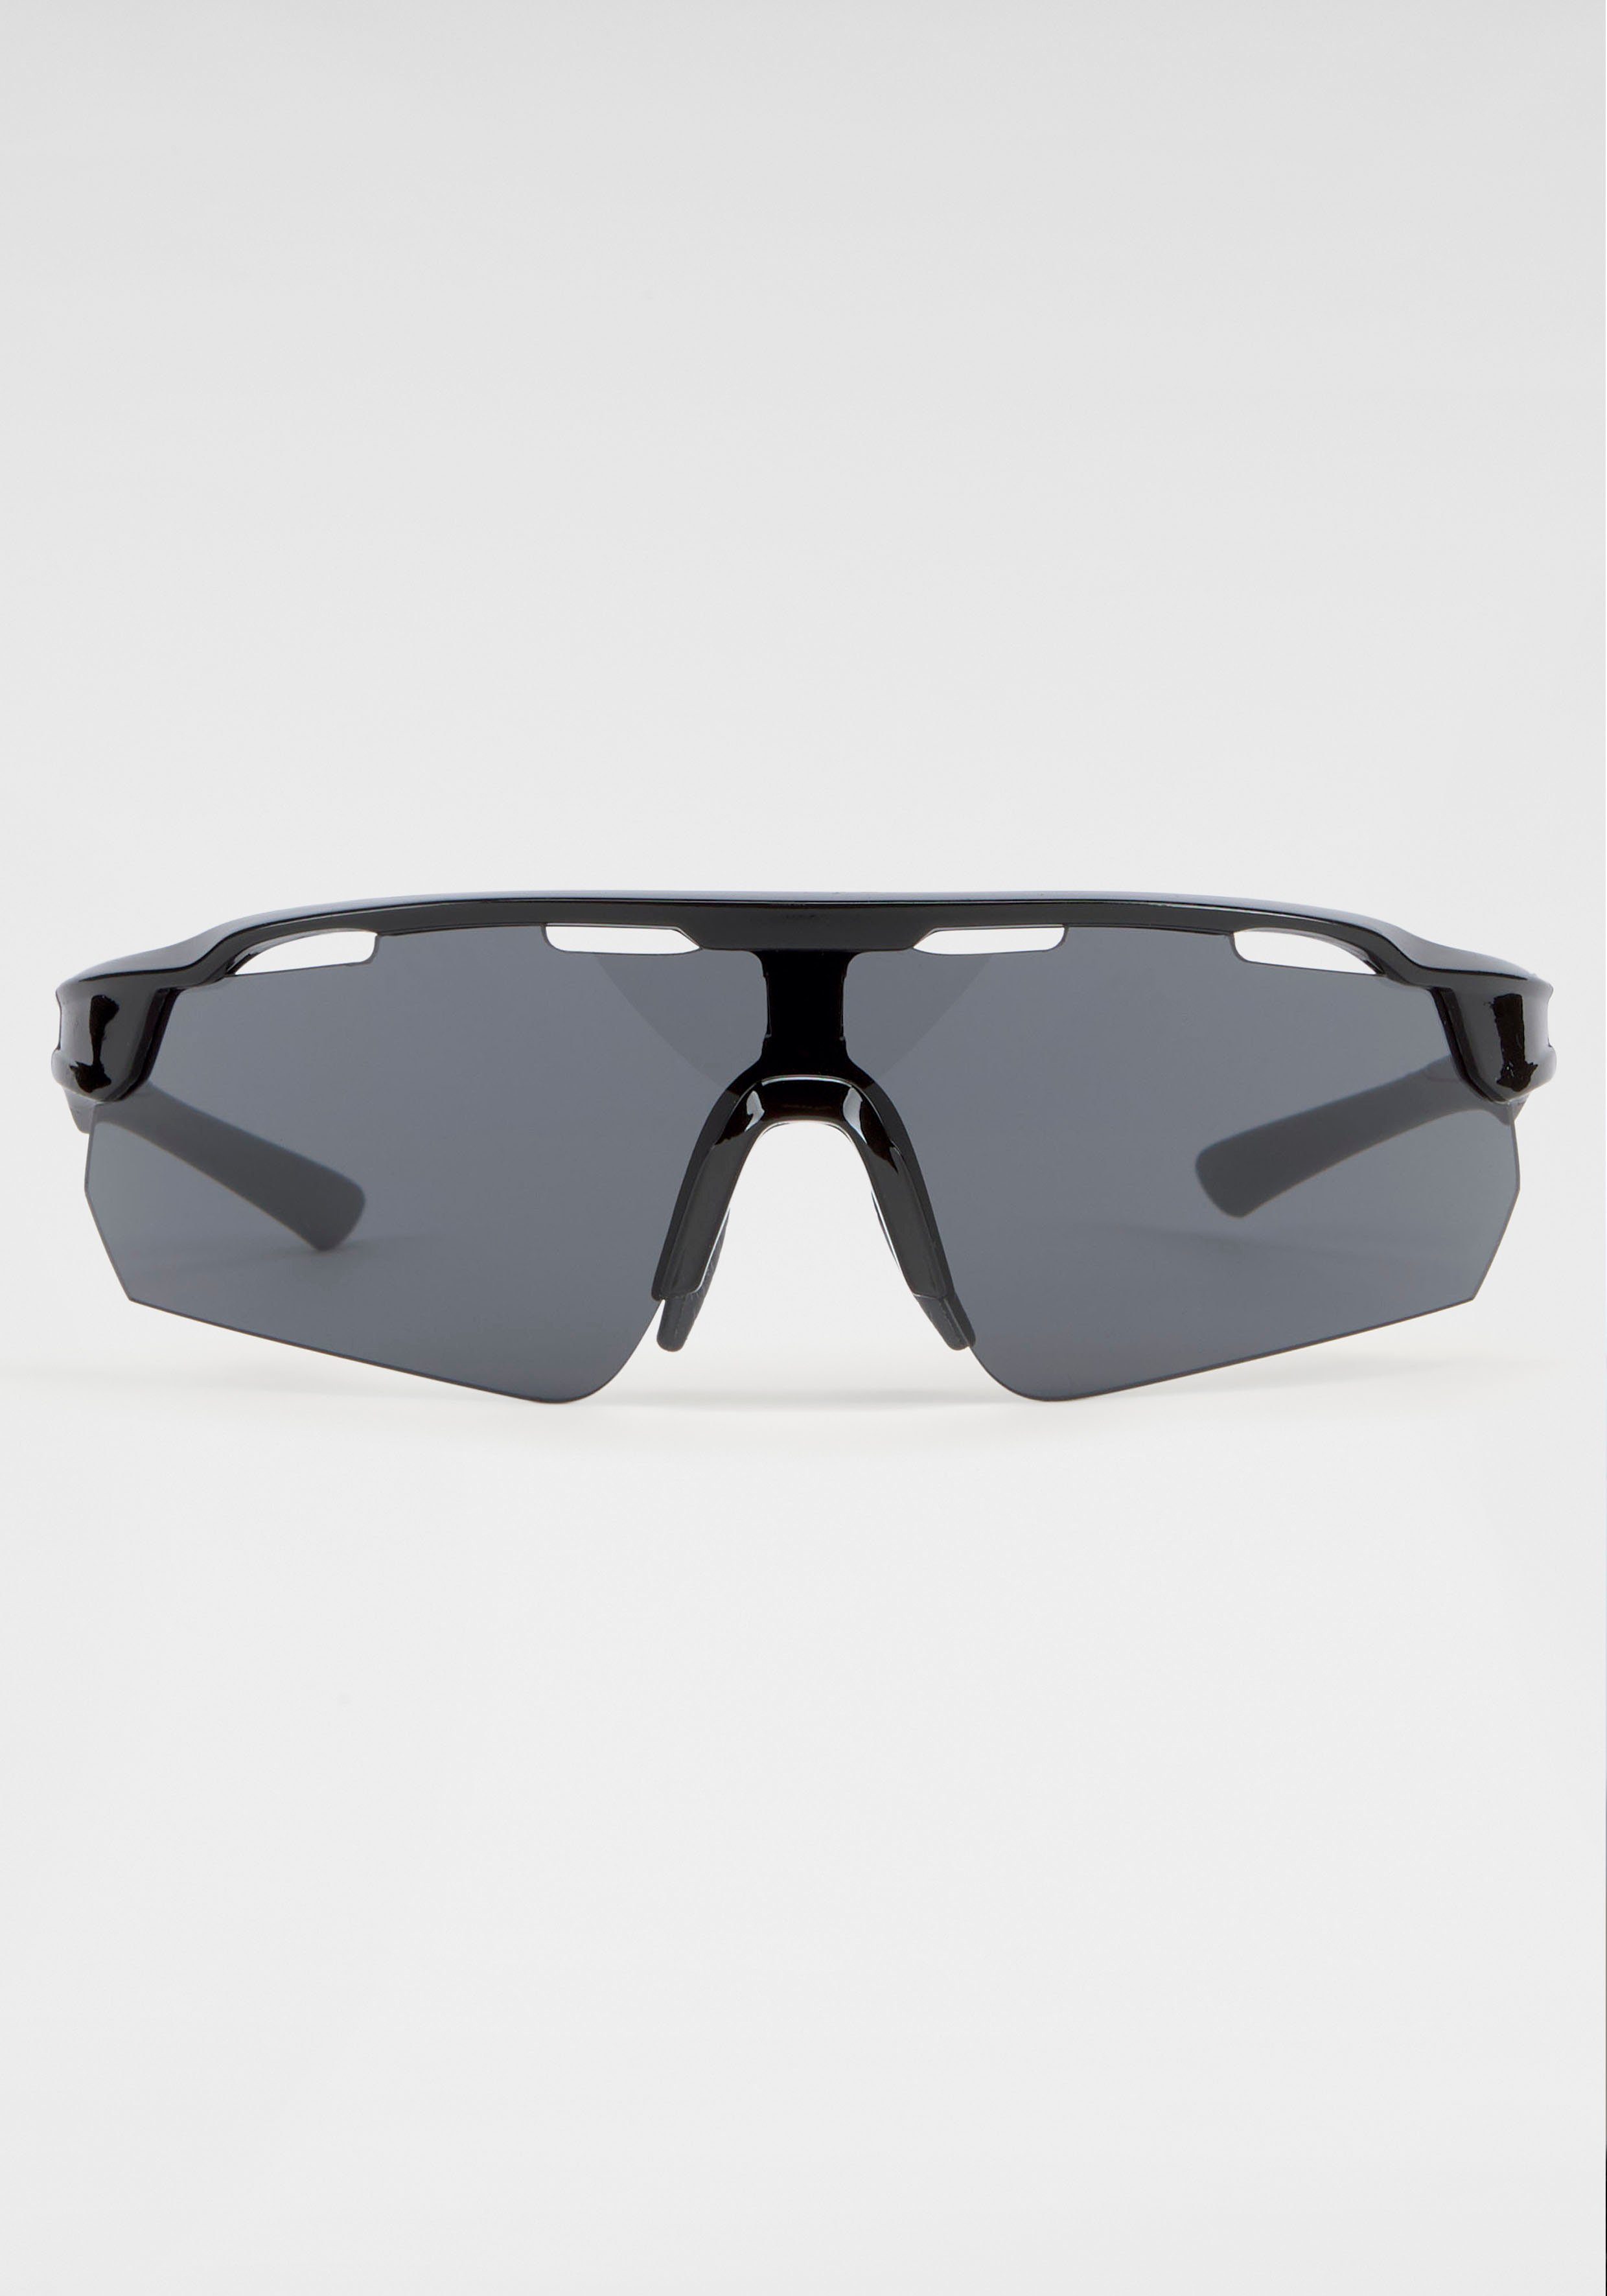 BACK IN BLACK Eyewear Sonnenbrille Gläsern mit gebogenen